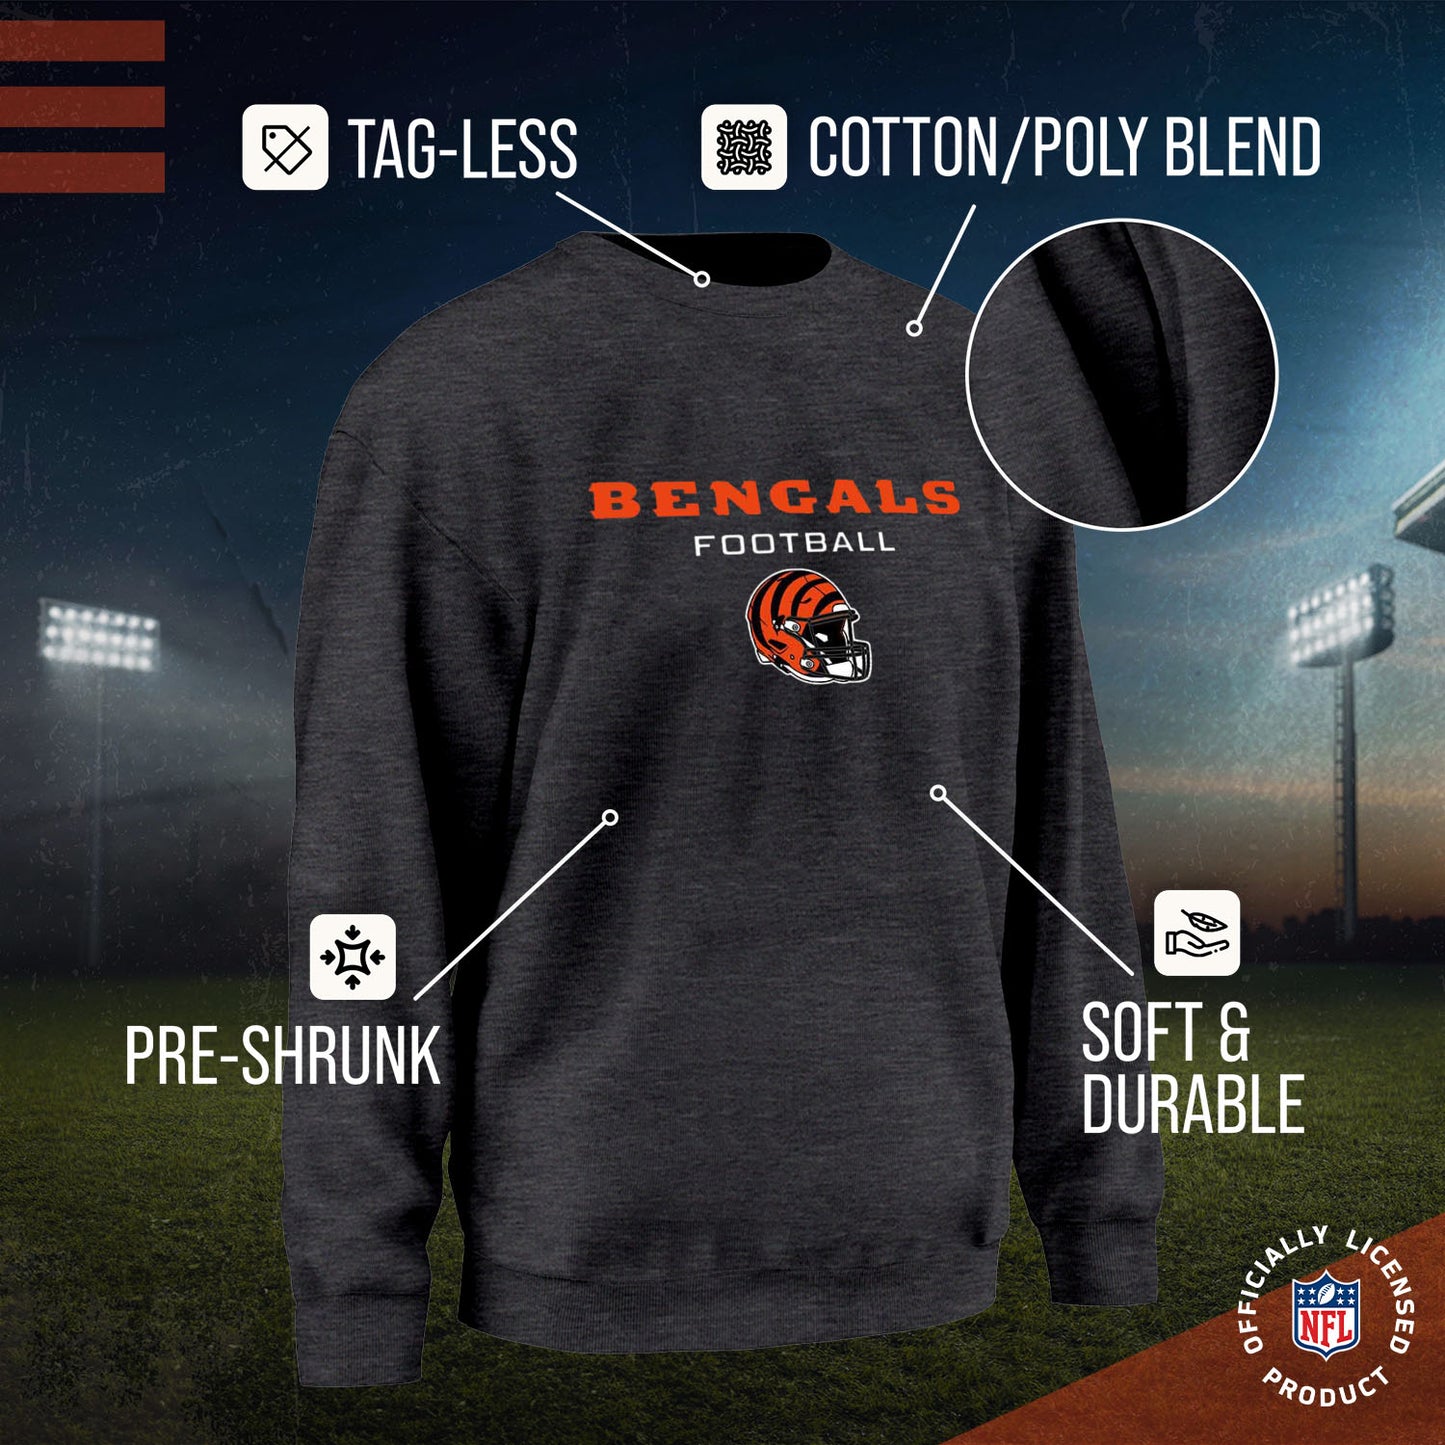 Cincinnati Bengals Adult NFL Football Helmet Heather Crewneck Sweatshirt - Charcoal